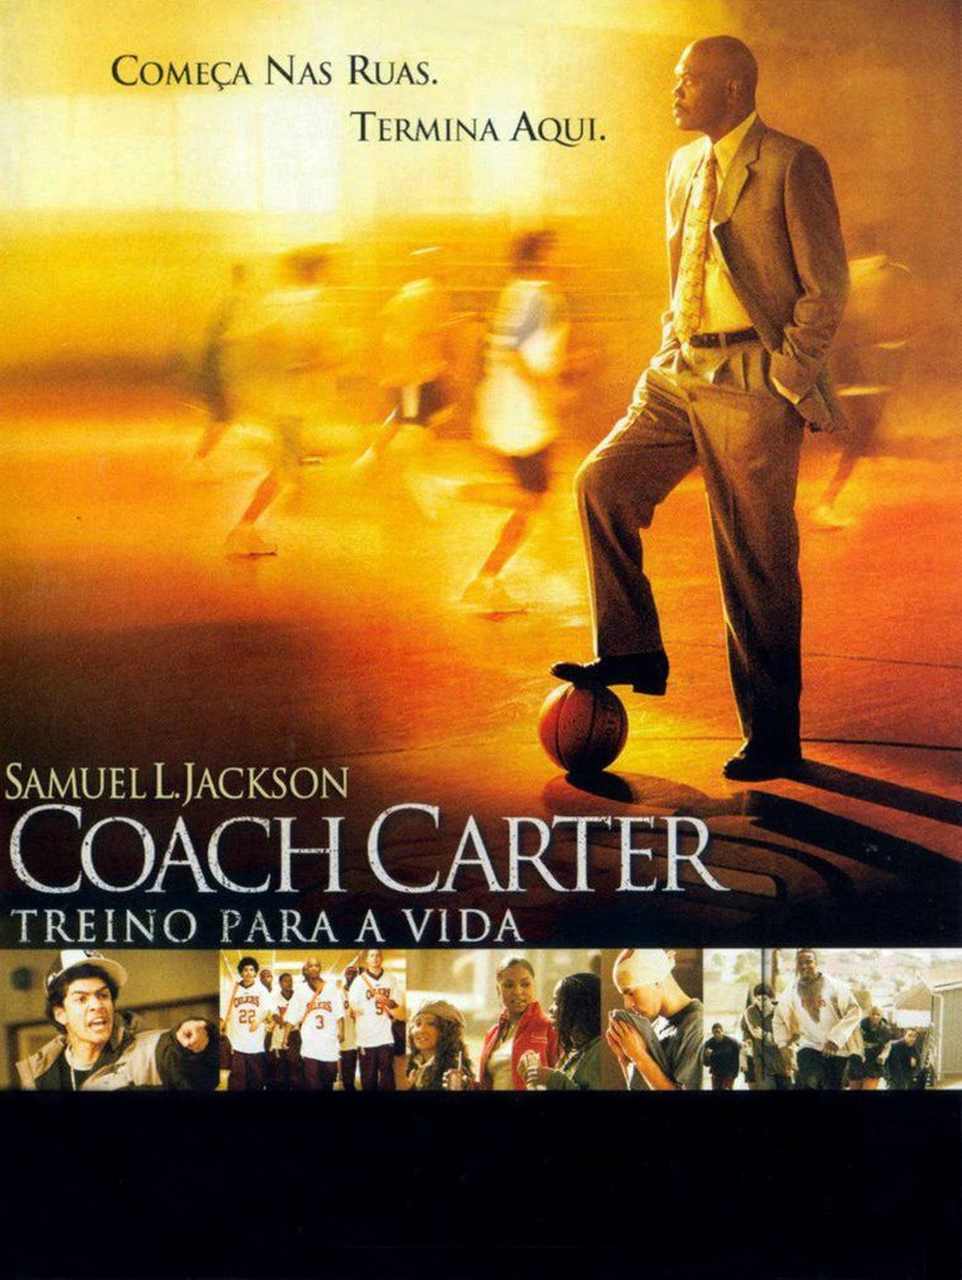 Coach Carter (2005) - É um dos melhores filmes de basquete que existem por aí. Samuel L. Jackson é um treinador que estabelece contratos para que seus jogadores sejam mais do que apenas atletas, mas sim, homens. É sobre basquete, mas o filme mostra o lado humano de alguém que tenta passar ensinamentos da vida real